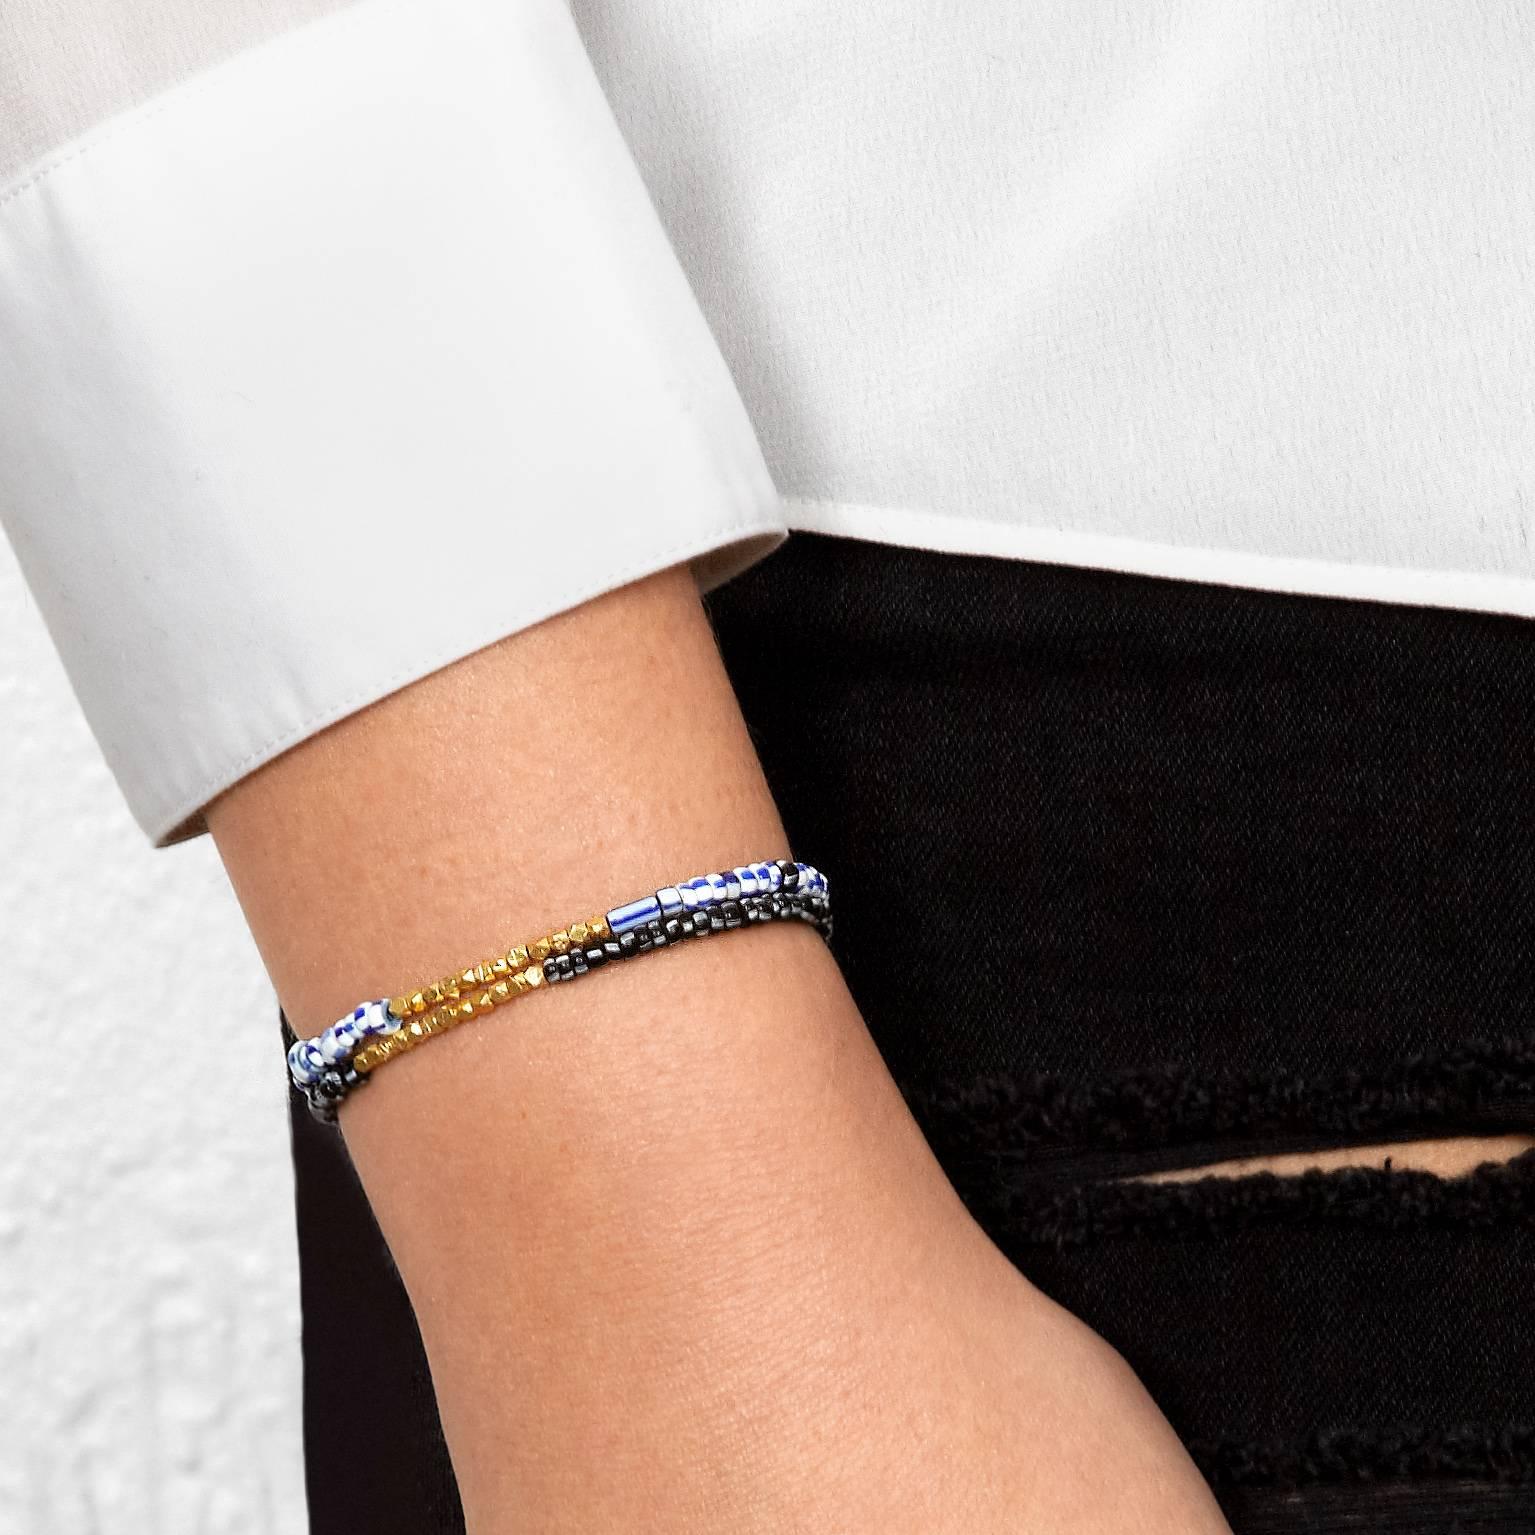 Dieses Armband besteht aus antiken blauen und weißen venezianischen Glasperlen, die mit einem Zoll massiven 14-karätigen Gelbgoldperlen akzentuiert sind.  Die Struktur ist stark, gespannt und elastisch.

Diese antiken venezianischen Perlen wurden in